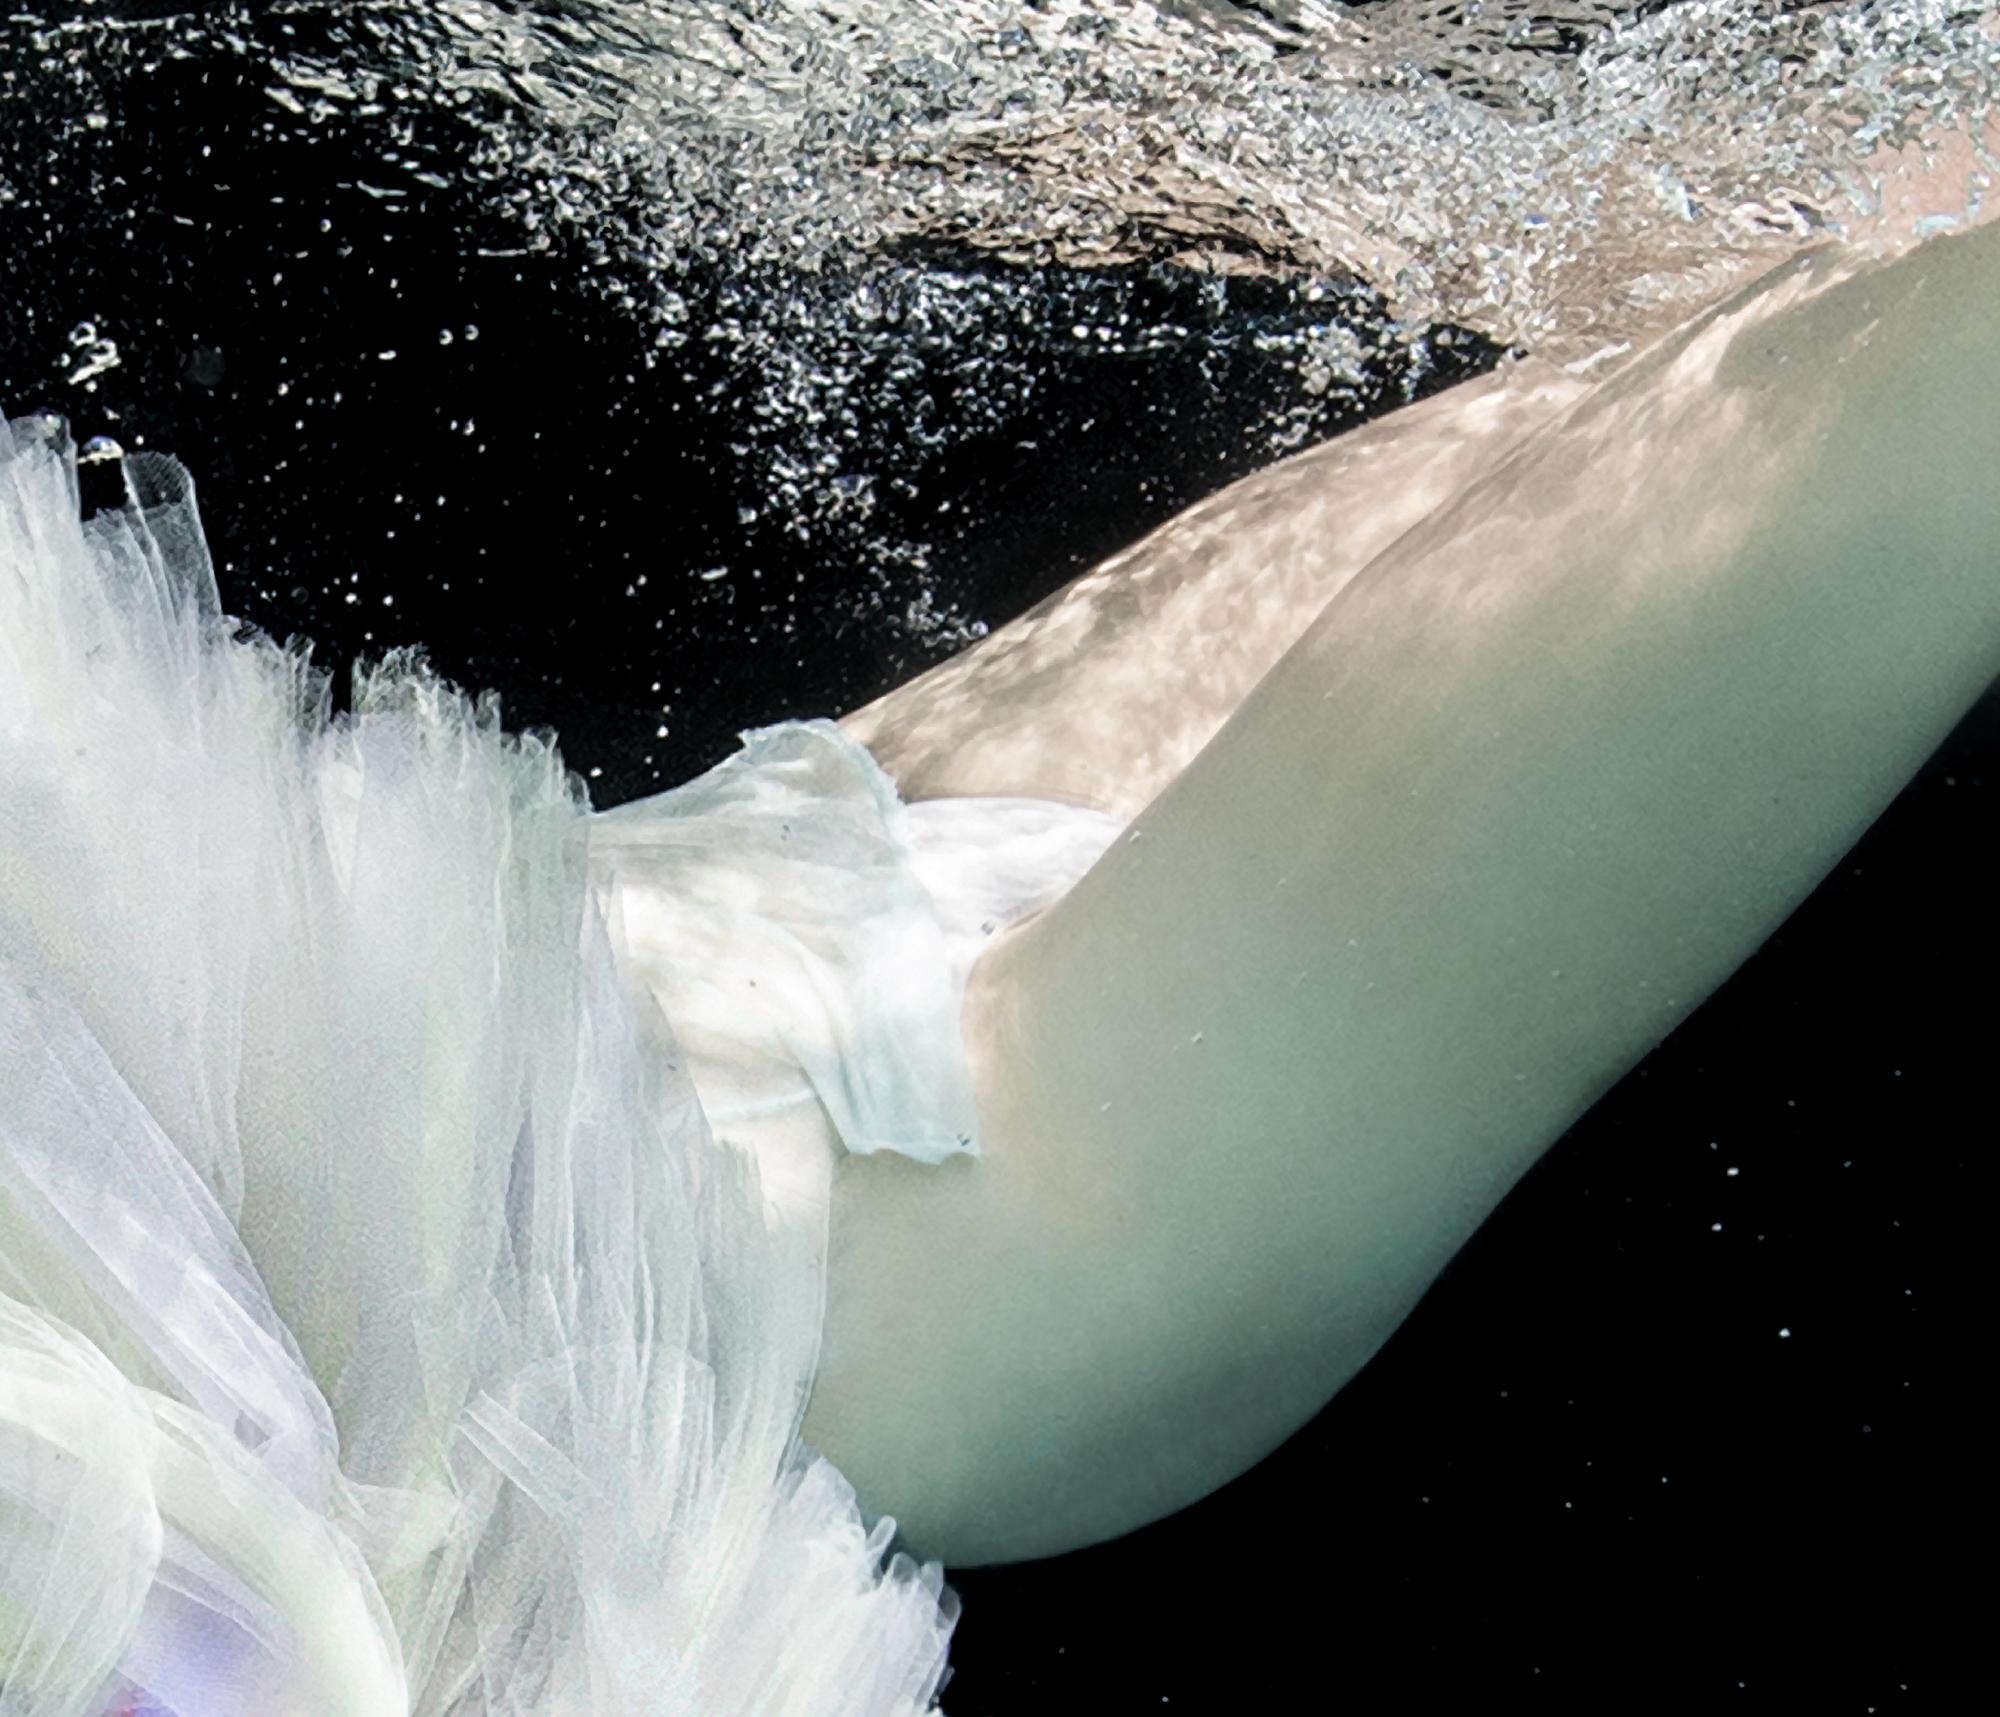 Eine Unterwasser-Schwarzweißfotografie einer jungen Tänzerin beim Tauchen im Pool. Die nackten Tänzerinnen bedecken sich mit einem Tutu-Rock.

Original-Pigmentdruck in Galeriequalität auf Archivpapier, vom Künstler signiert. 
Limitierte Auflage von